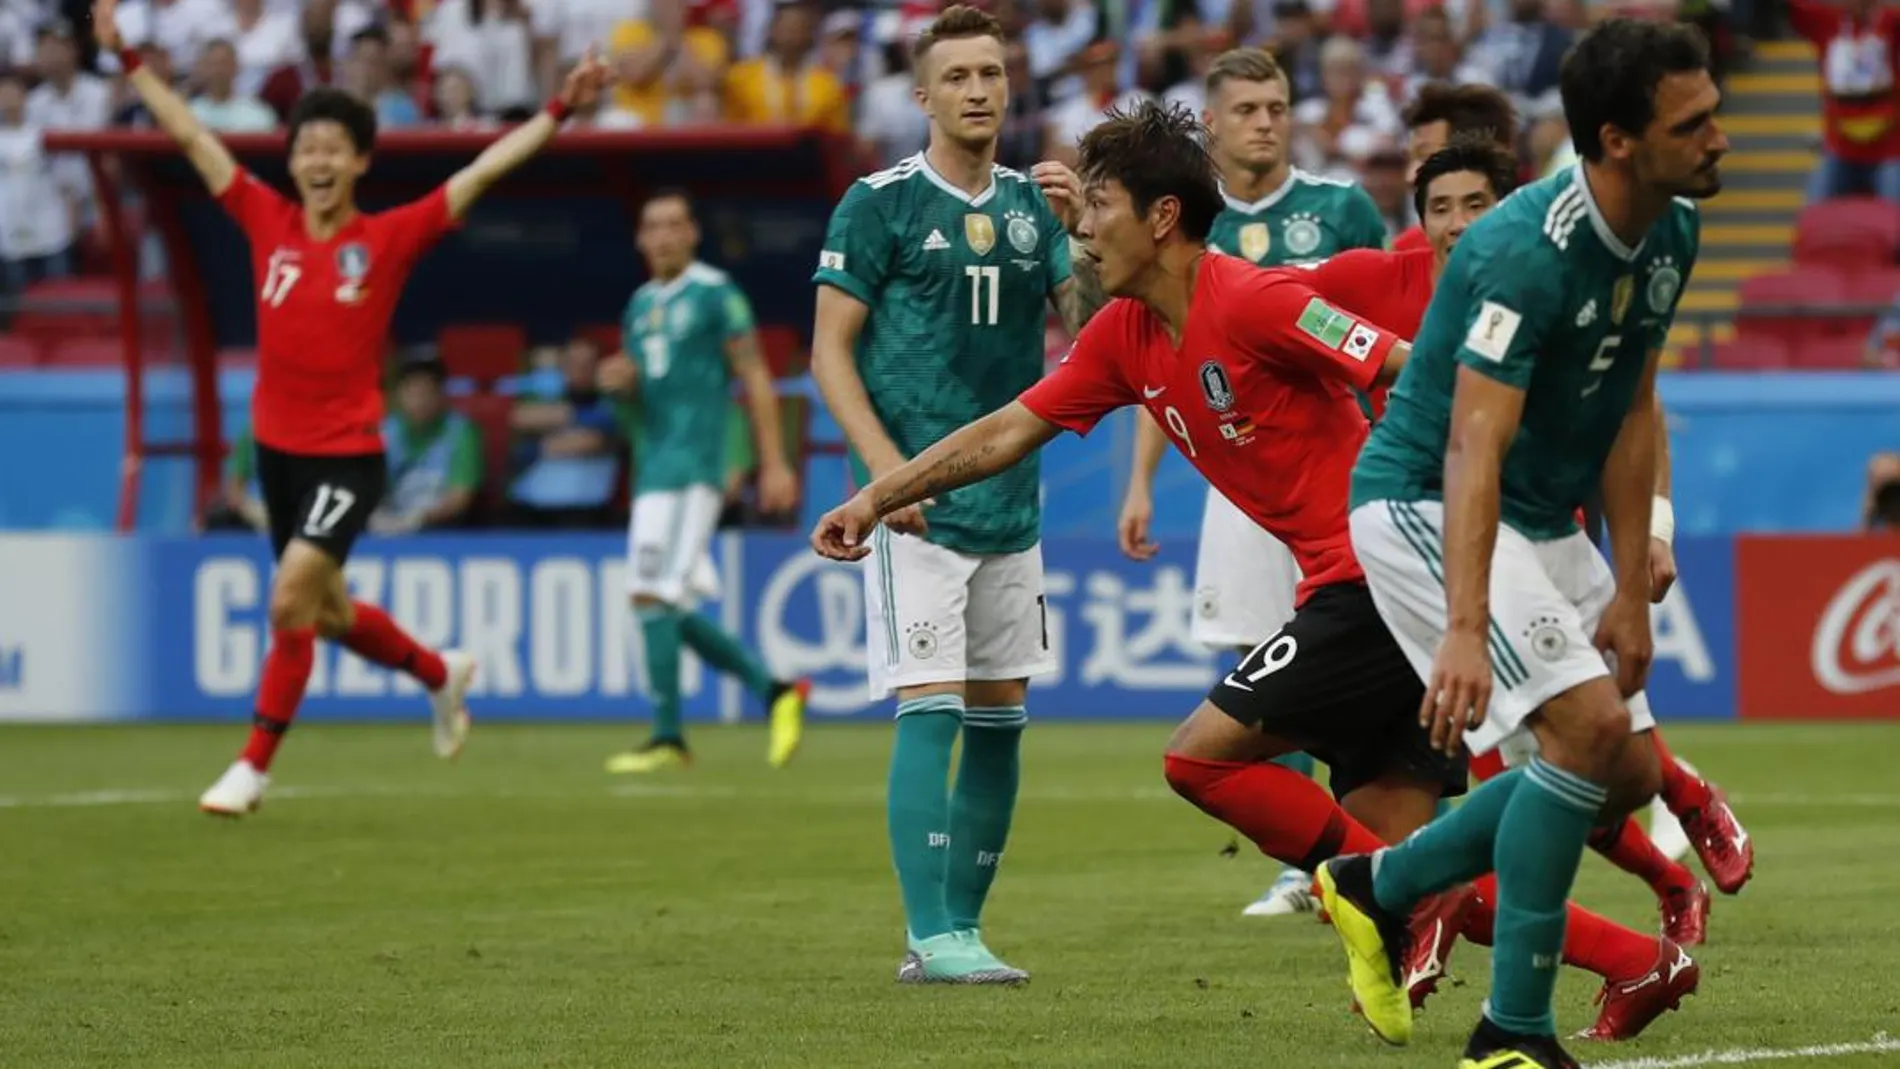 El surcoreano Kim Young-gwon celebra uno de los goles anotados ante Alemania / Ap